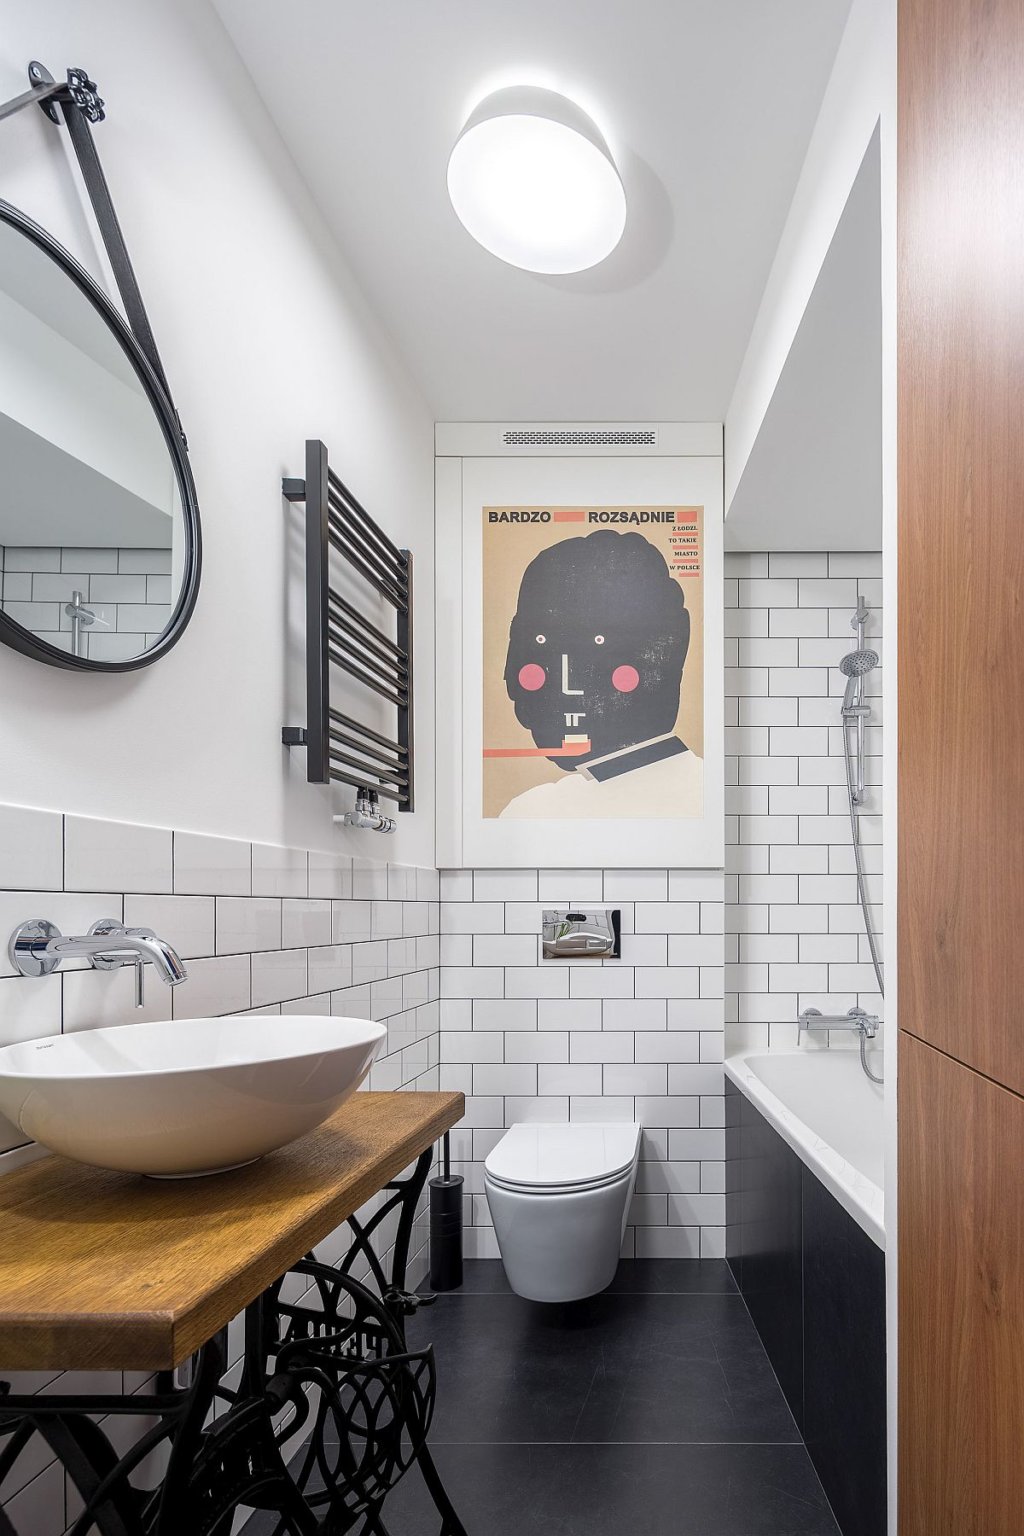 Phòng tắm tông màu đen trắng trong căn hộ 52m2 là sự kết hợp hài hòa giữa phong cách hiện đại và yếu tố cổ điển.